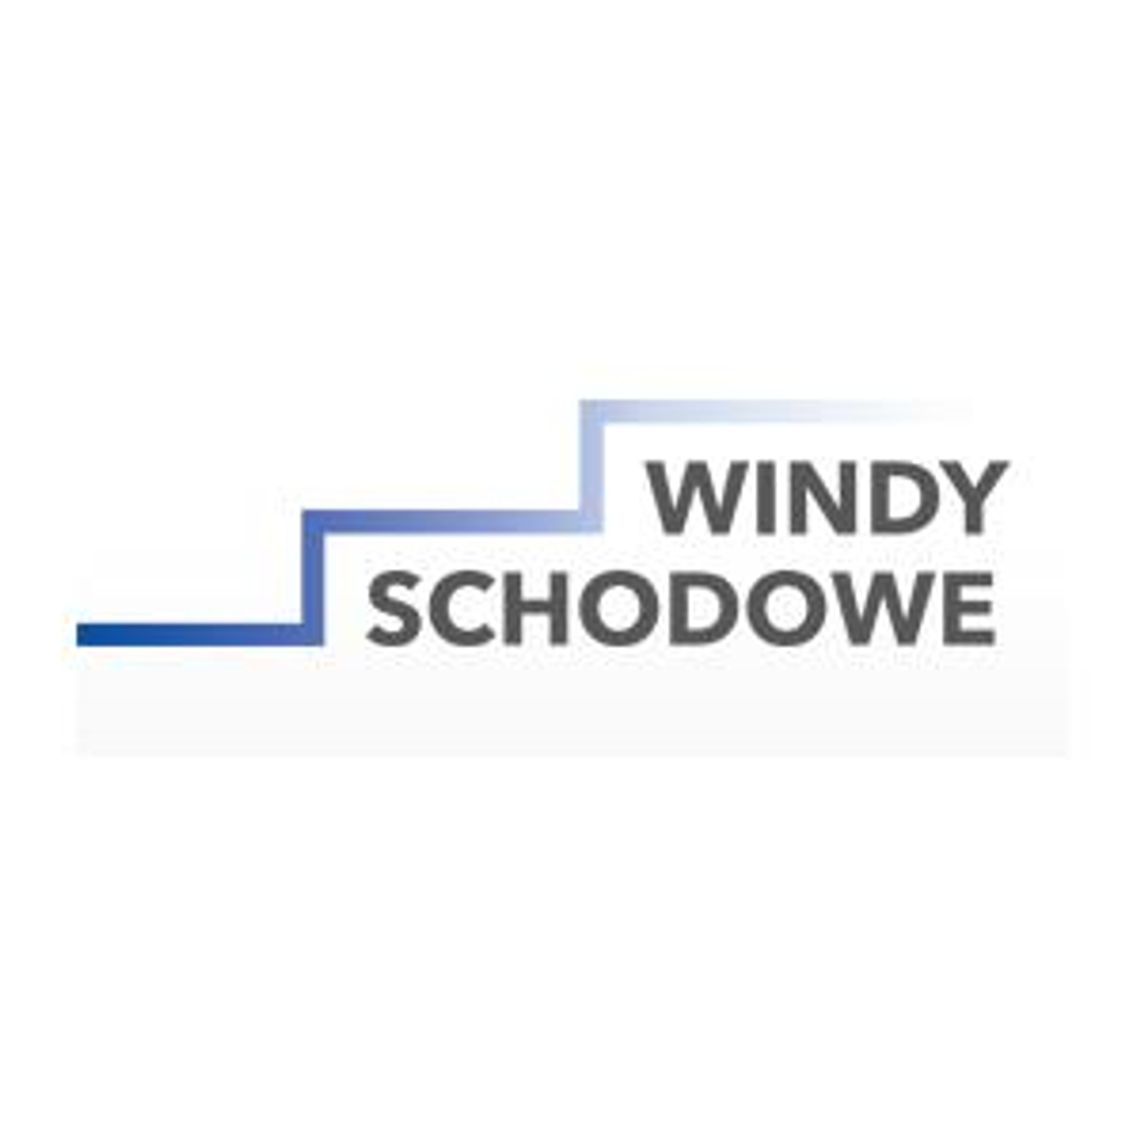 Platformy schodowe - Windy schodowe